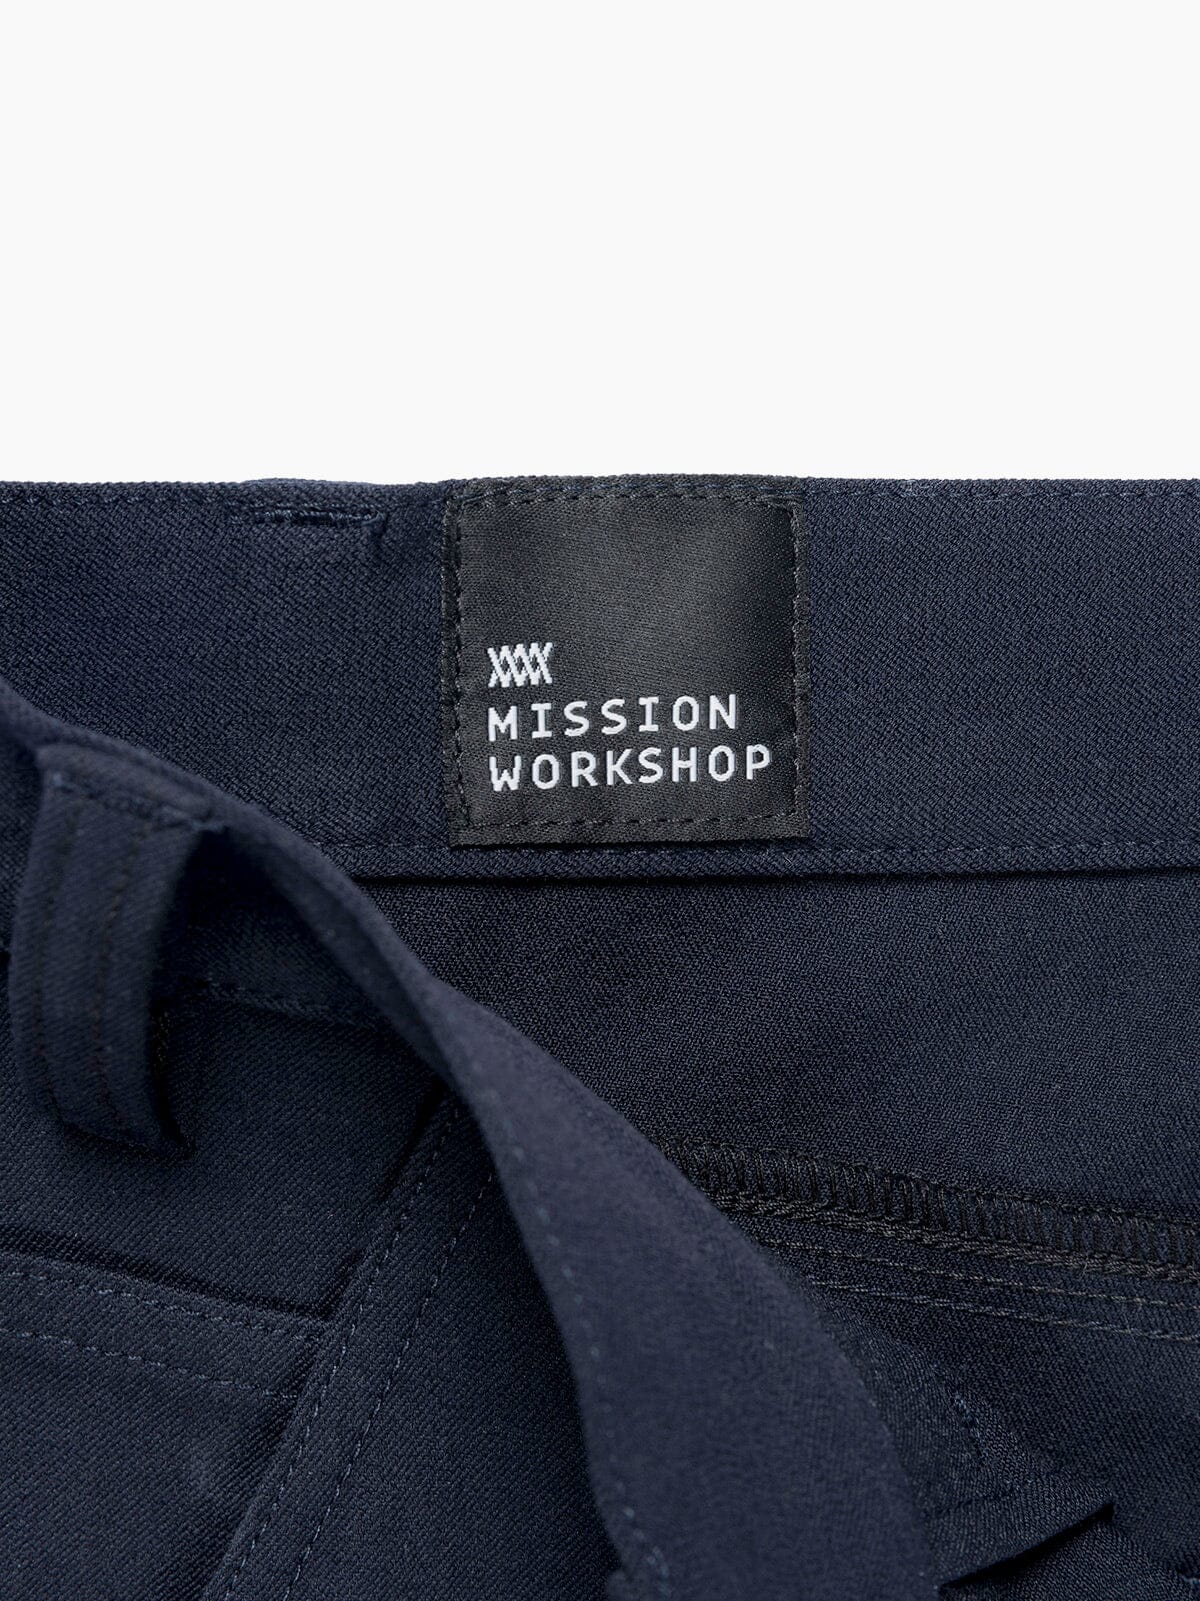 Paragon by Mission Workshop - Bolsas impermeables y ropa técnica - San Francisco y Los Ángeles - Construidas para durar - Garantizadas para siempre